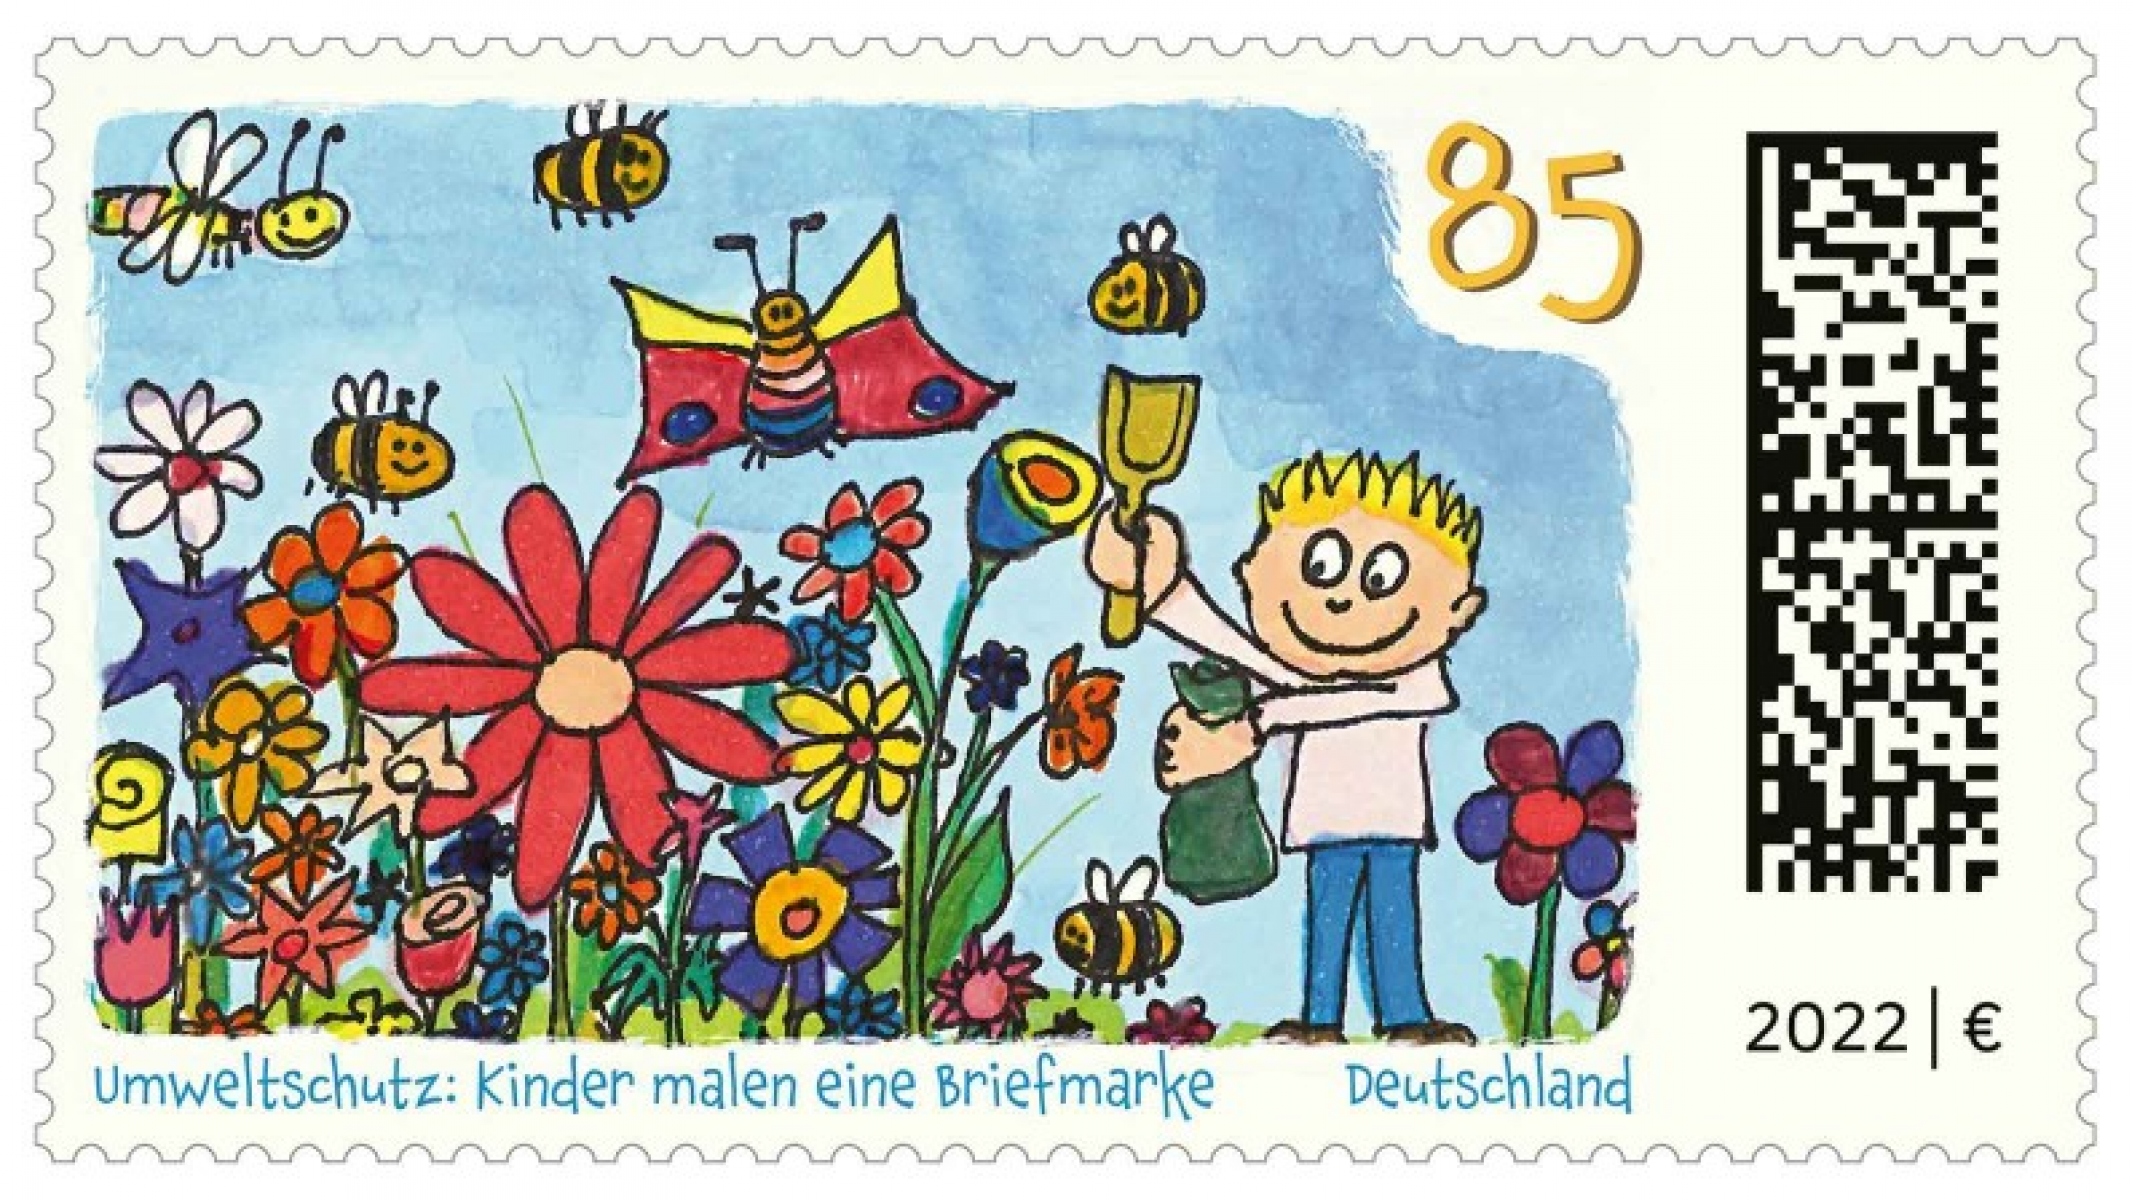 Gezeichnet hat das Blumenmotiv der erst 7-jährige Niklas aus Bayern. © Bundesfinanzministerium